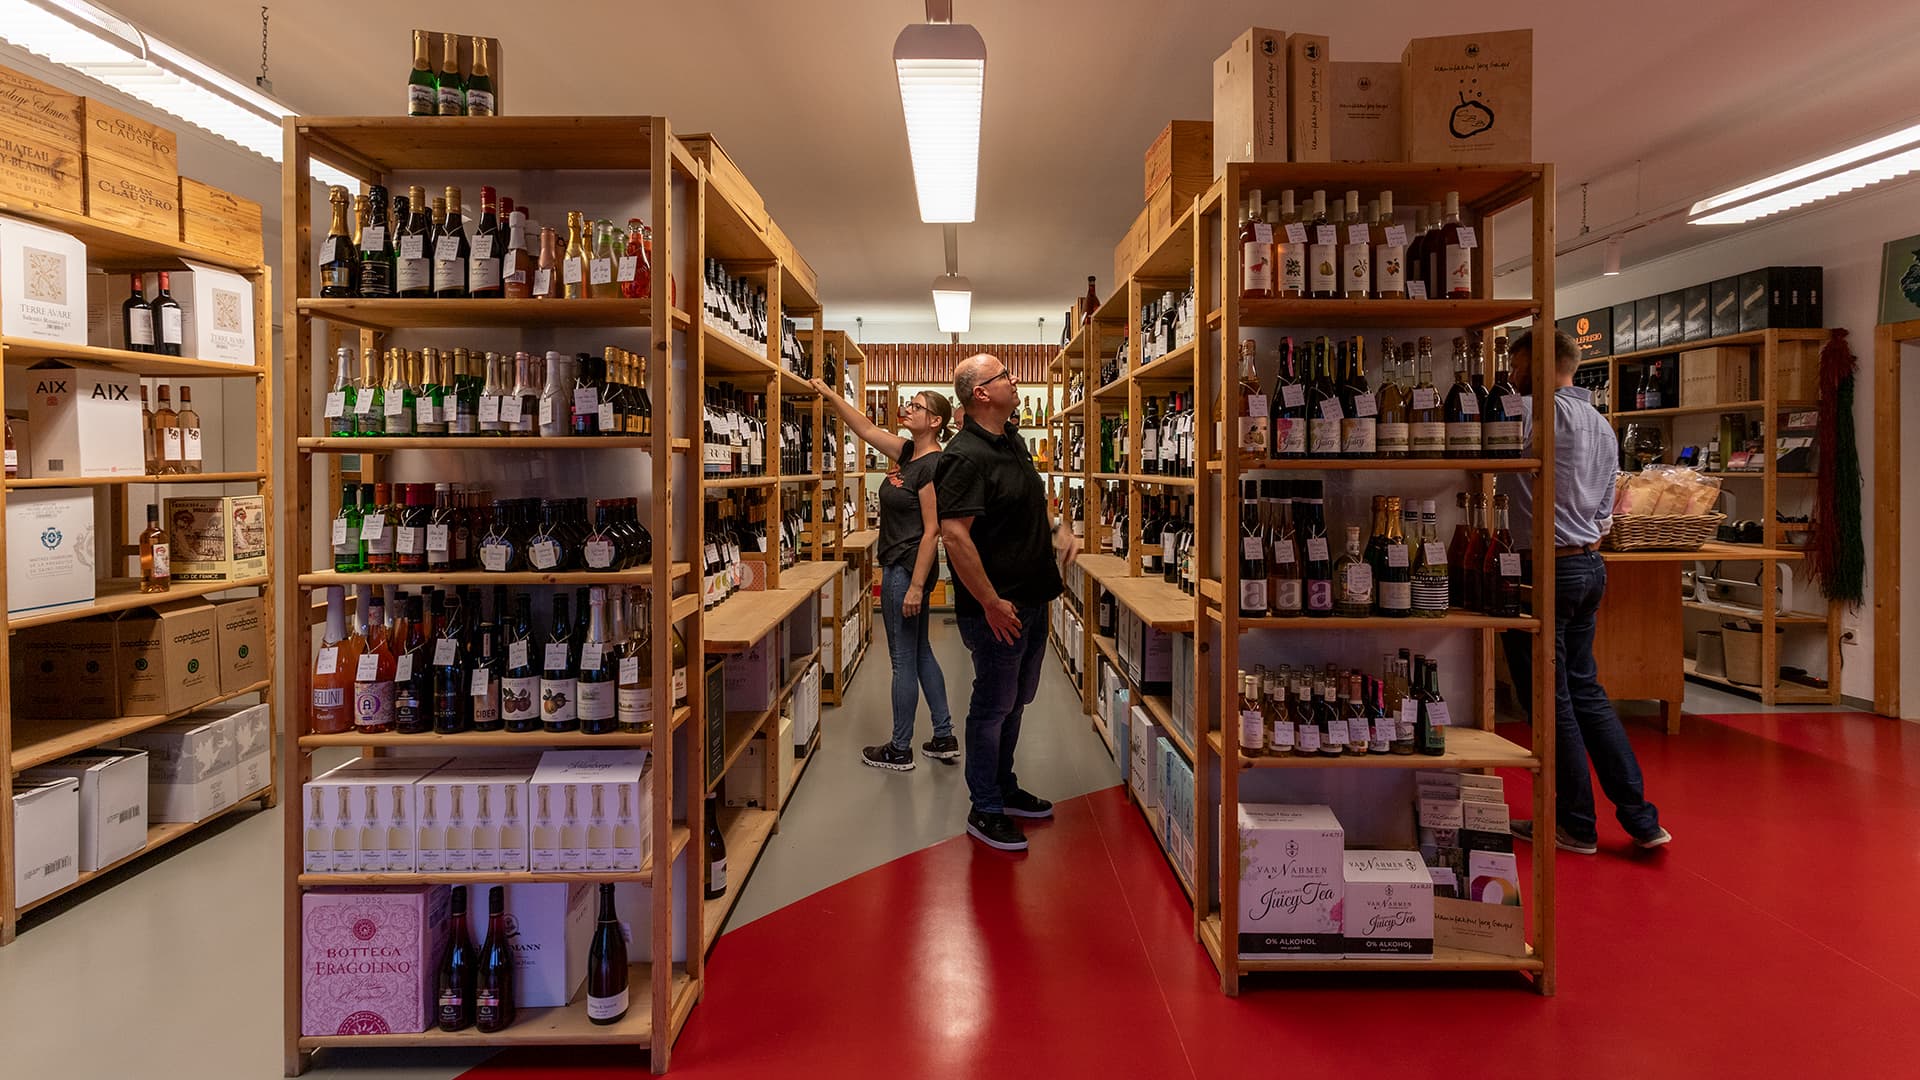 Blick in die Regale von Wein-Engelhardt, wo diverse Kund:innen ihren neuen Lieblingswein suchen.